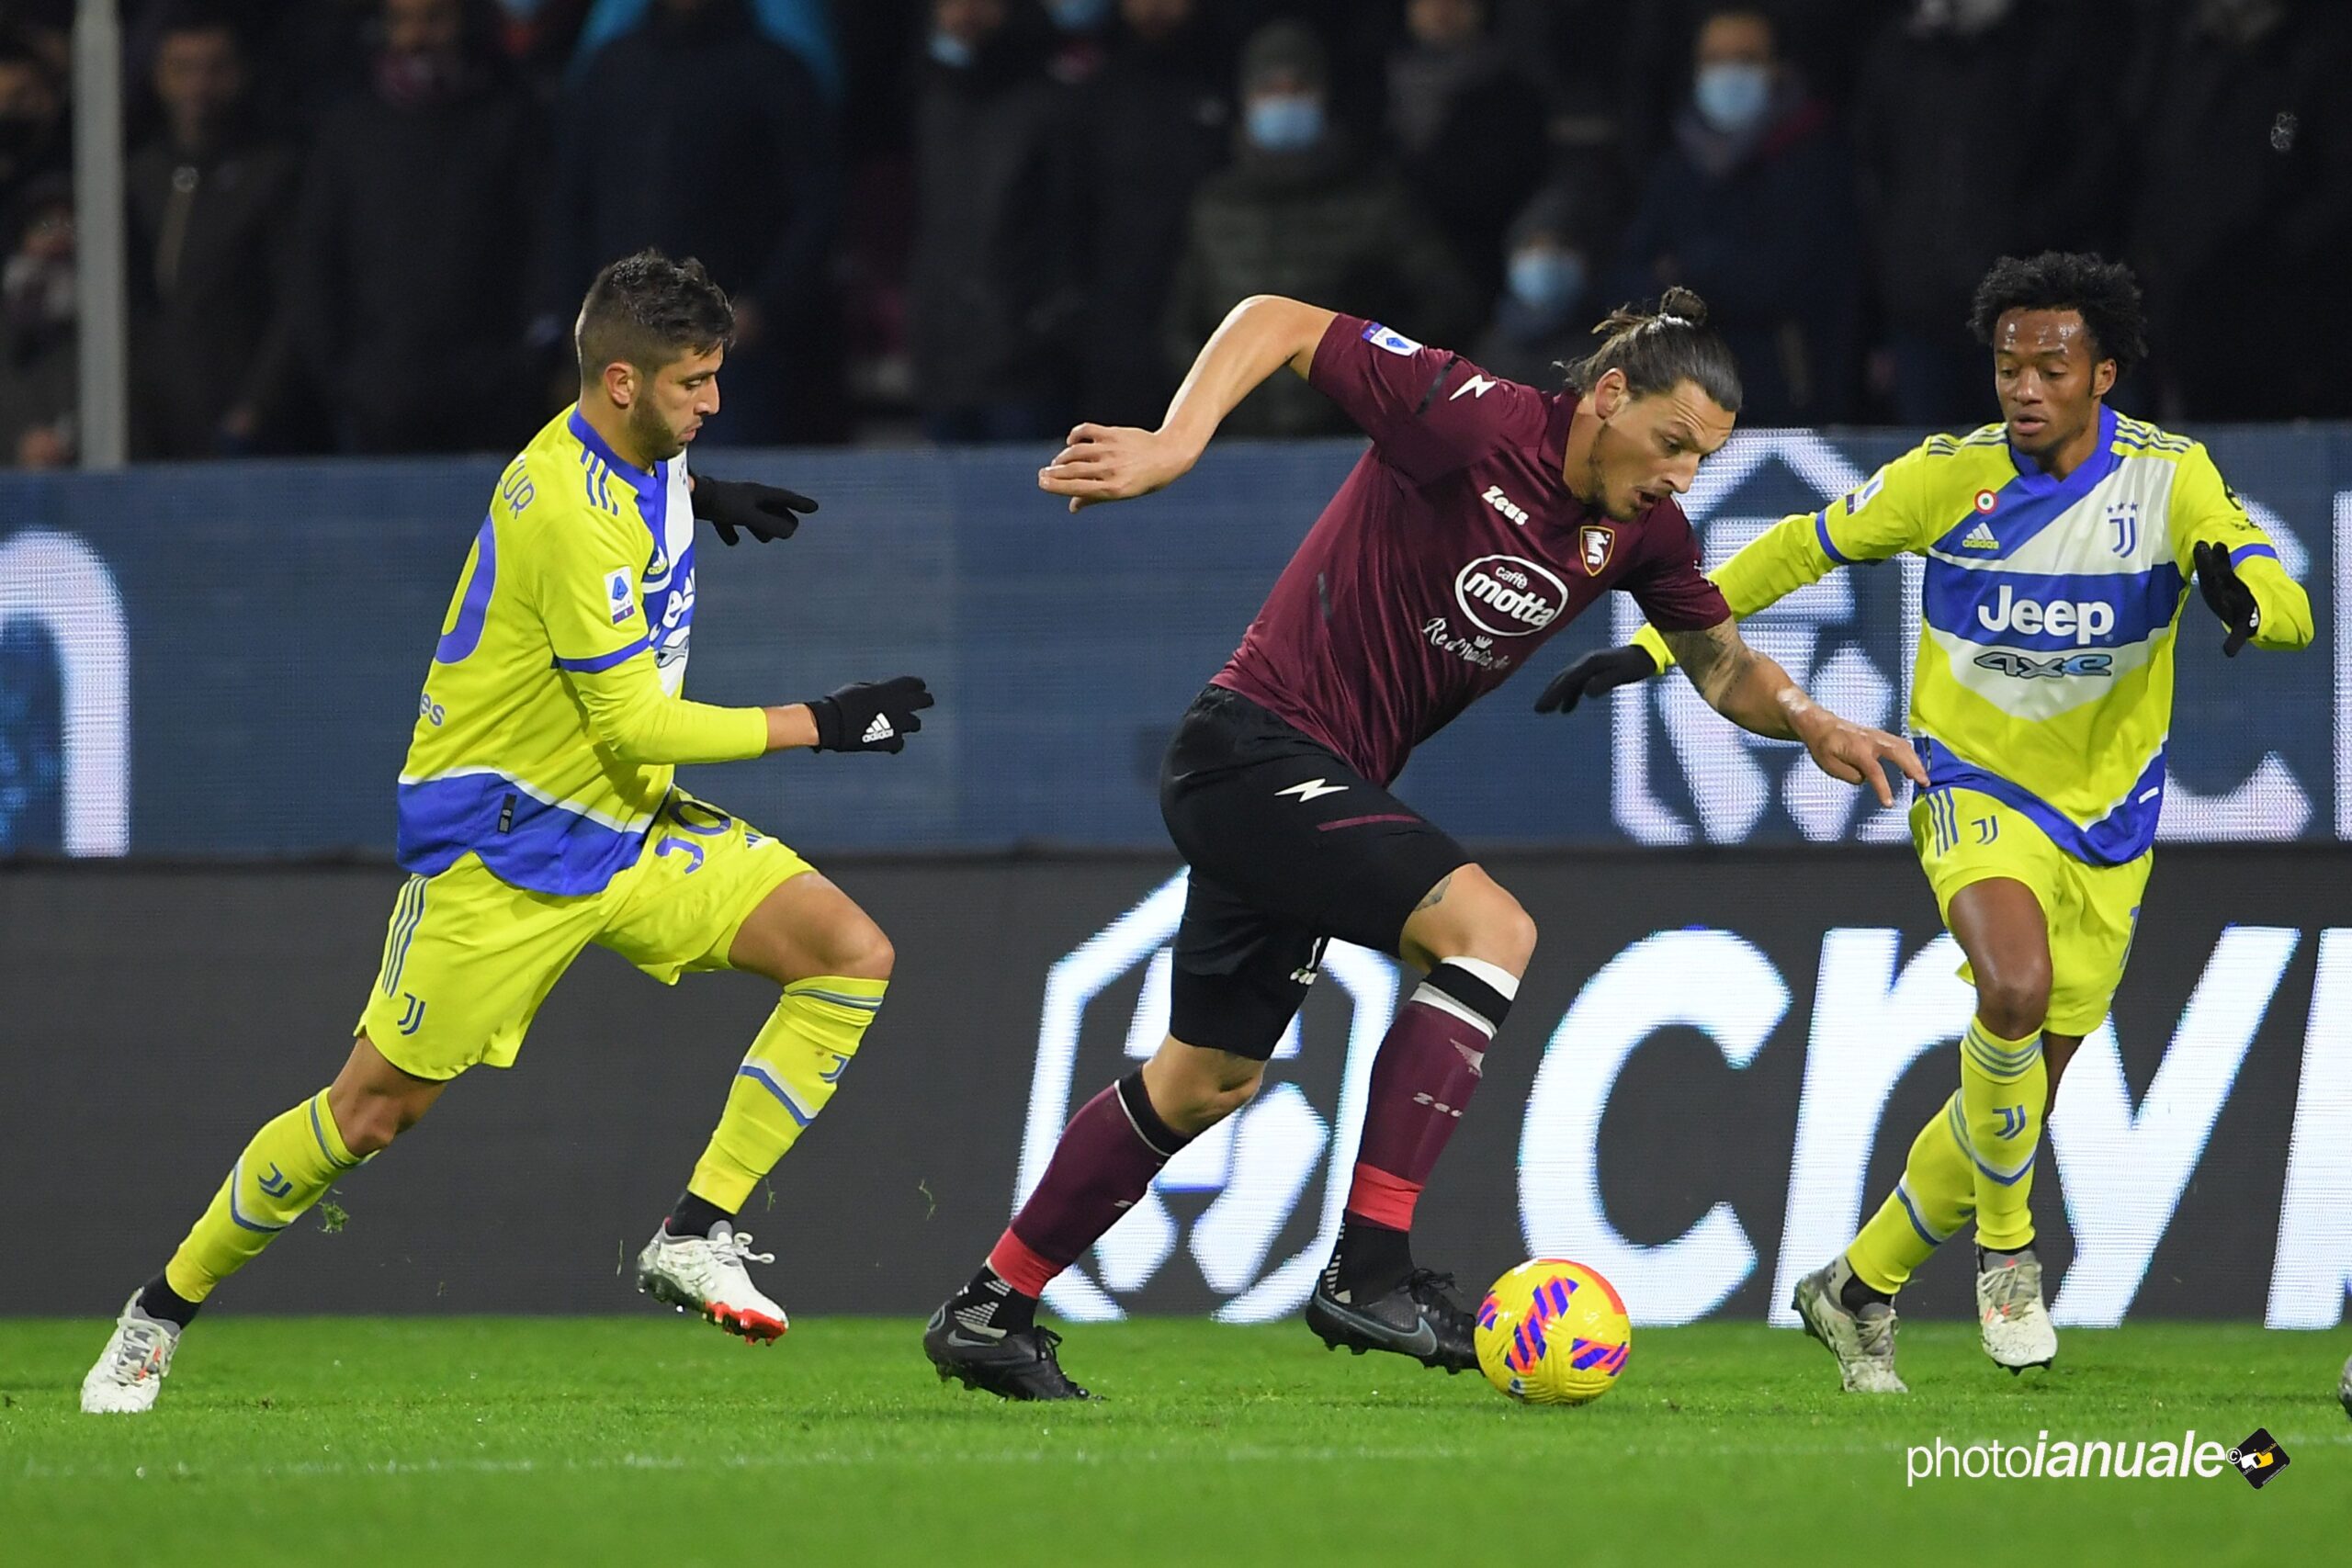 Salernitana – Juventus 0 – 2: Highlights